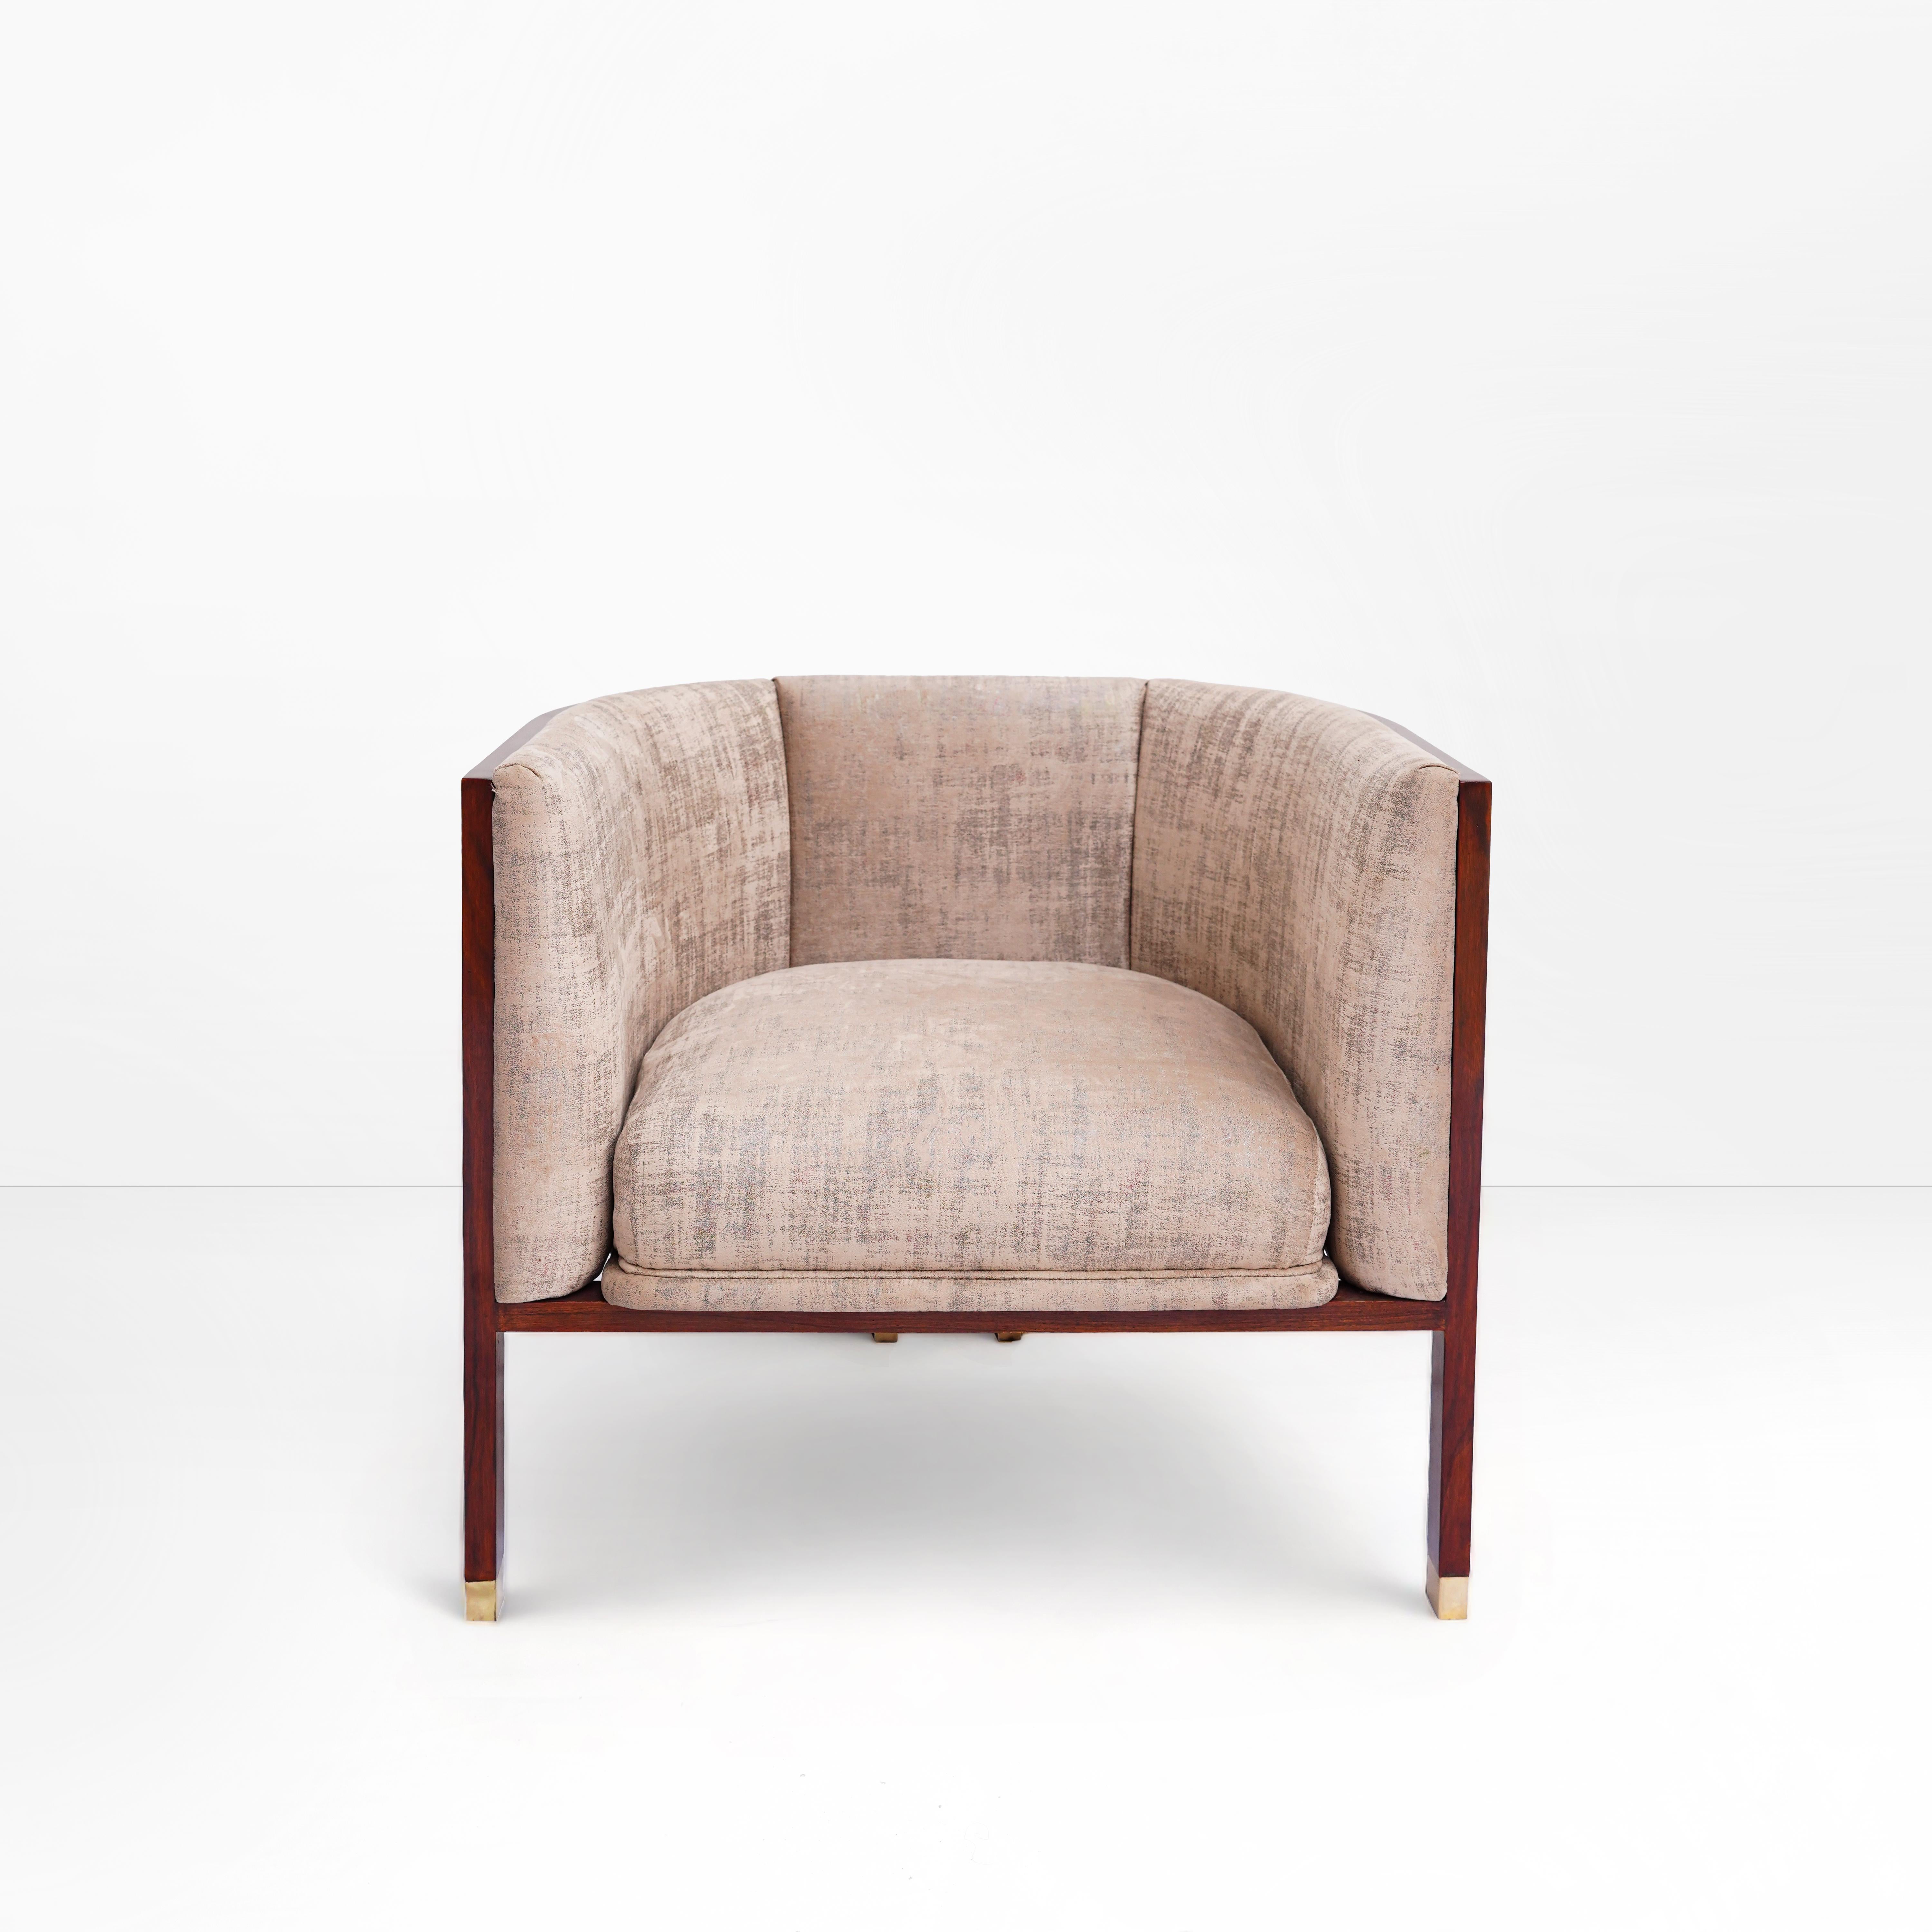 Erleben Sie die zeitlose Eleganz von Erete: Ein moderner, kühner Stuhl mit Faßrücken und originellem Design

Lassen Sie sich von Erete verzaubern, einem kühnen und exquisit gefertigten Stuhl mit Tonnenlehne, der die Ästhetik der Mitte des